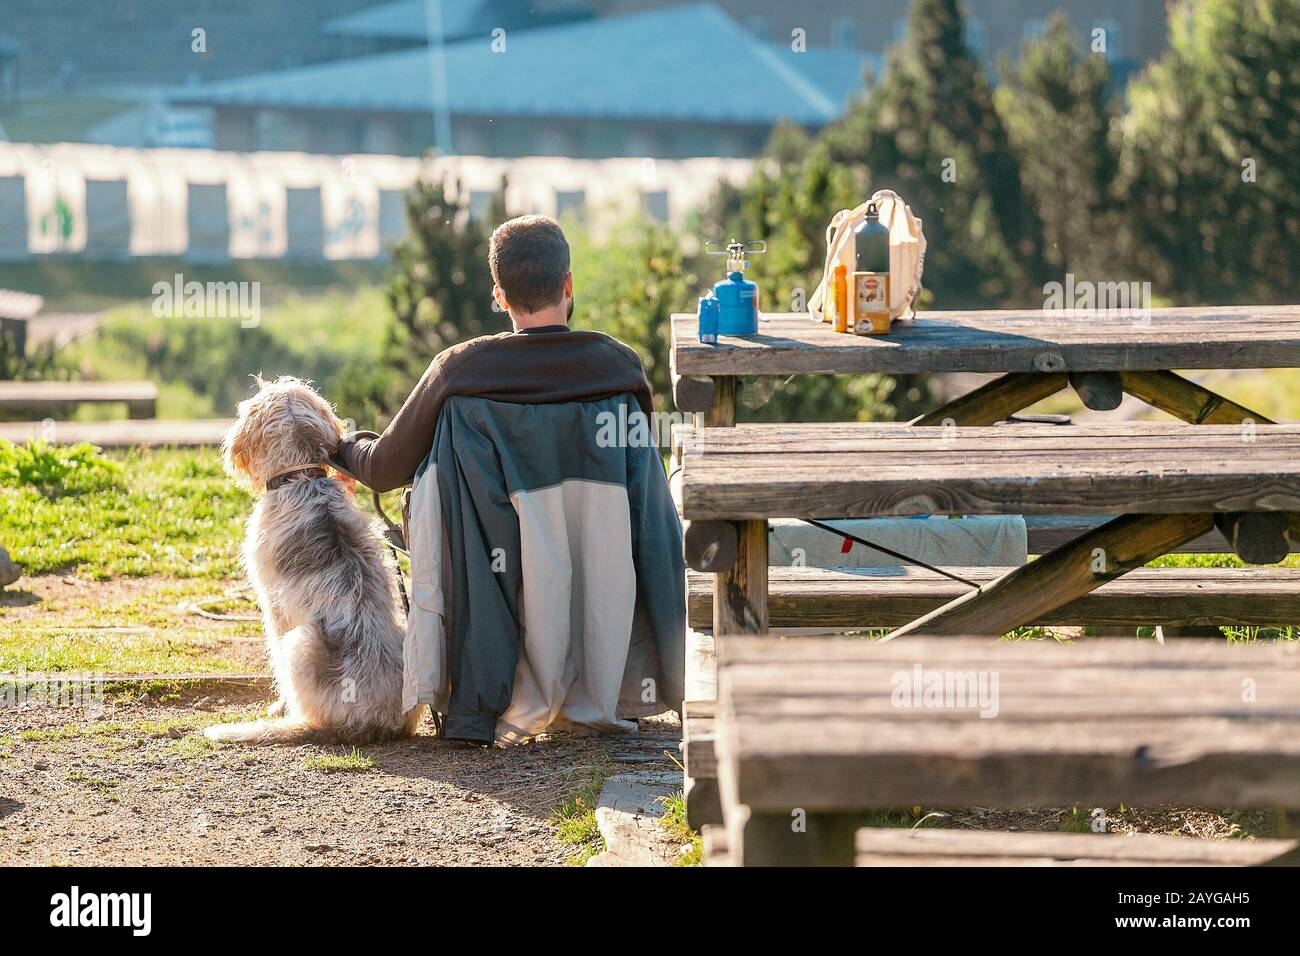 25 JUILLET 2018, NURIA, ESPAGNE: Homme assis en tente de camping avec son chien animal de compagnie Banque D'Images